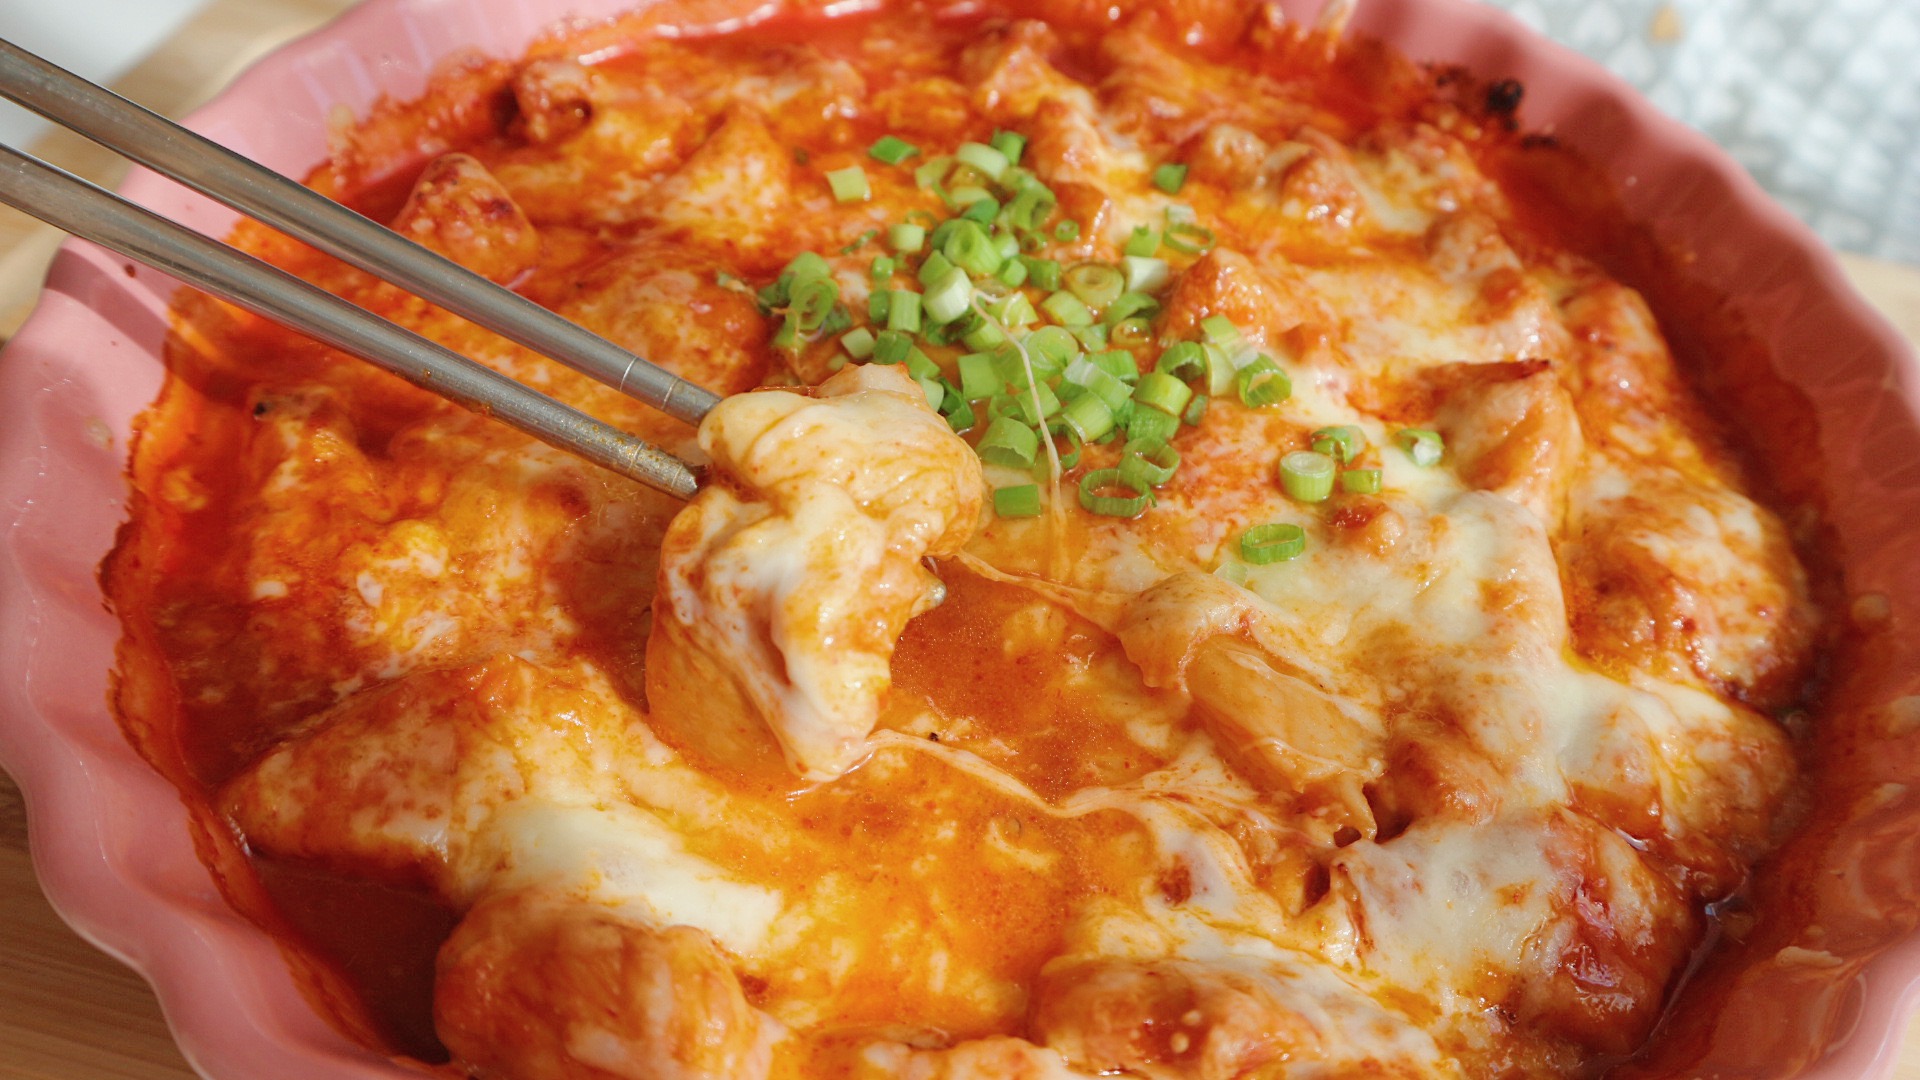 Buldak Recipe (Korean Fire Chicken) - Chili Pepper Madness